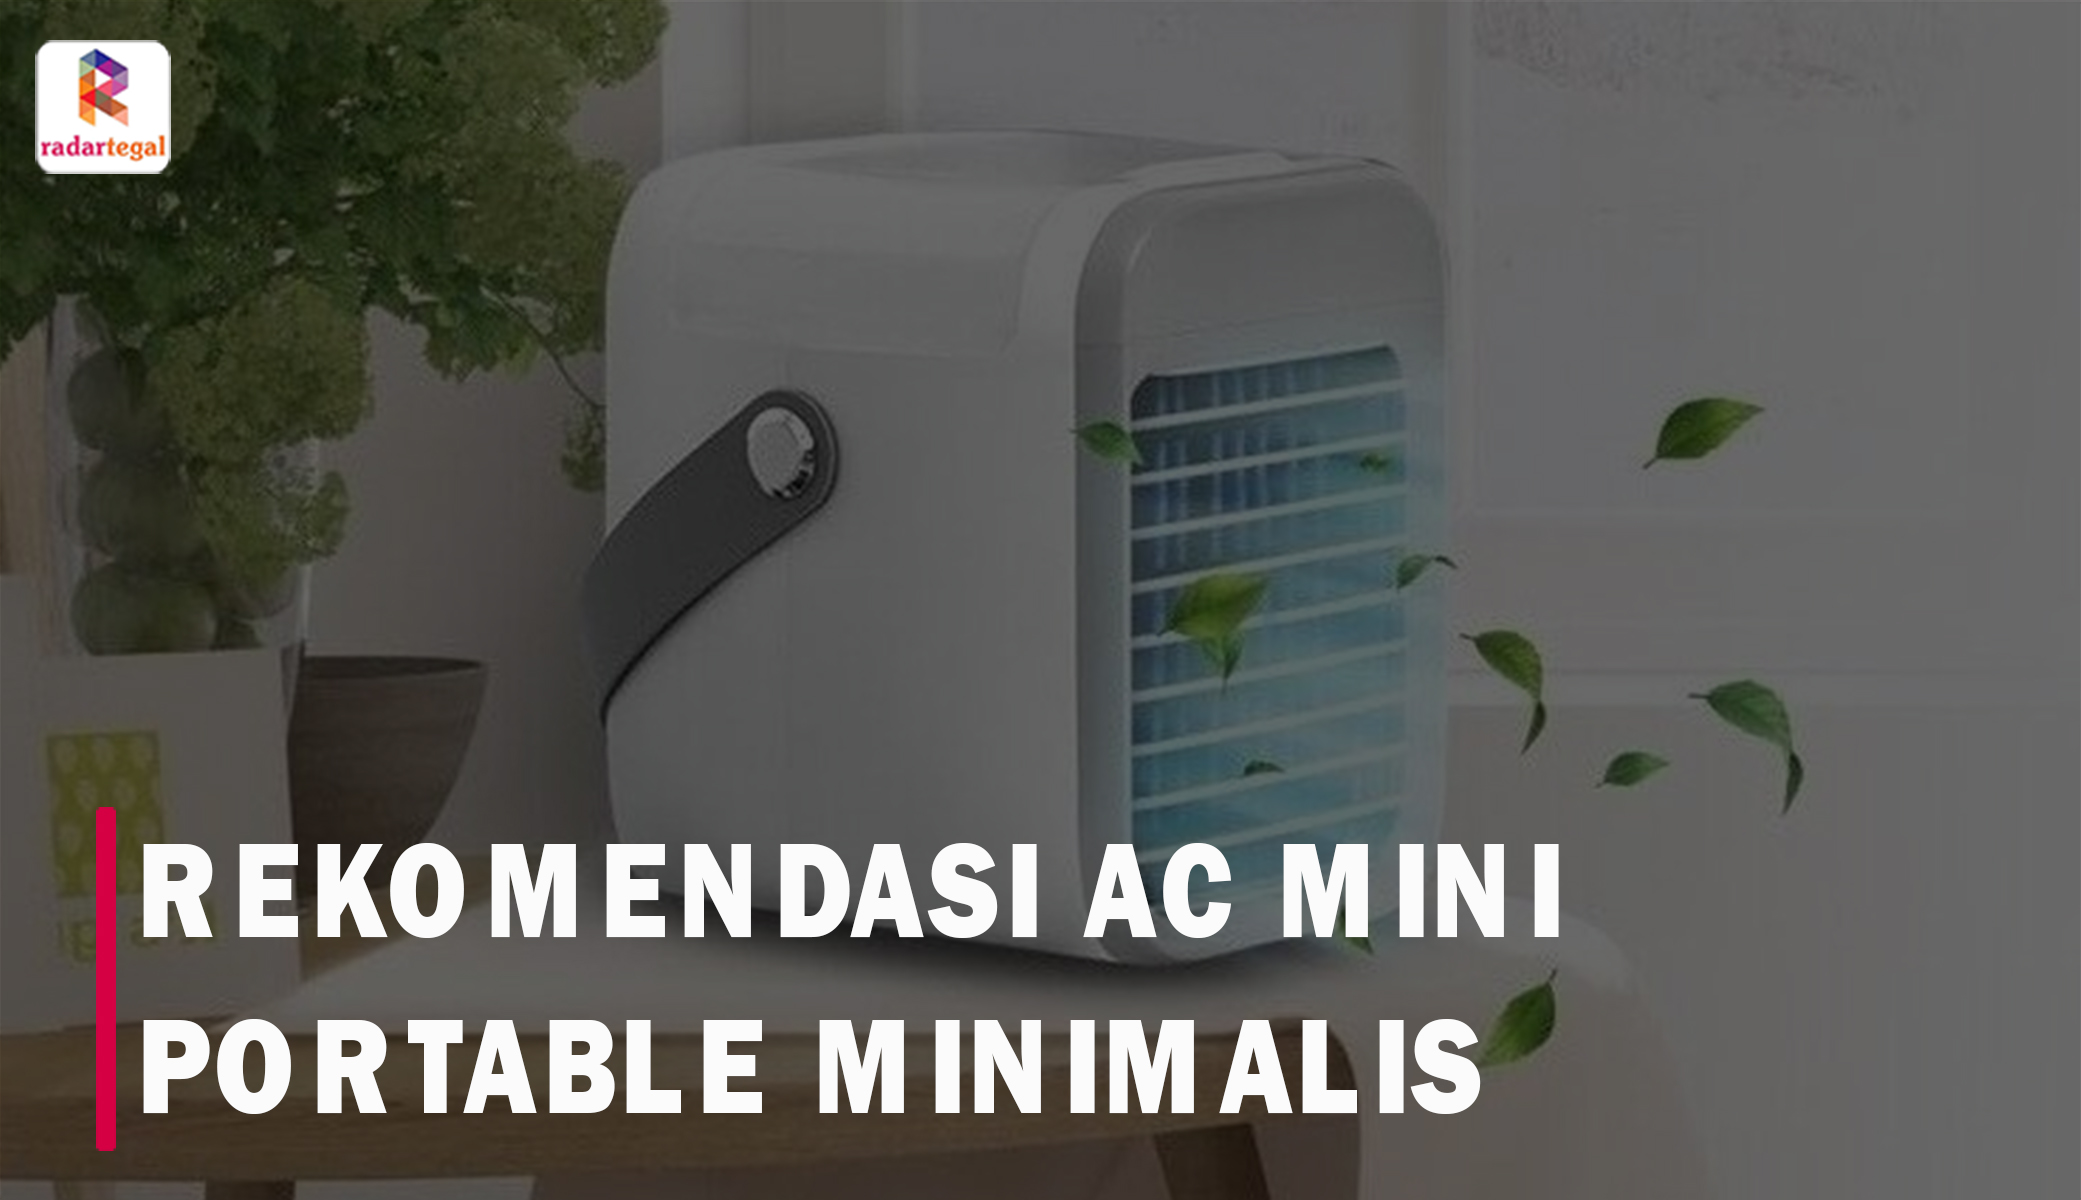 8 AC Mini Portable Minimalis yang Cocok Banget untuk Kamar Gerah dan Sempit, Harga Mulai 300 Ribuan Abangkuh!